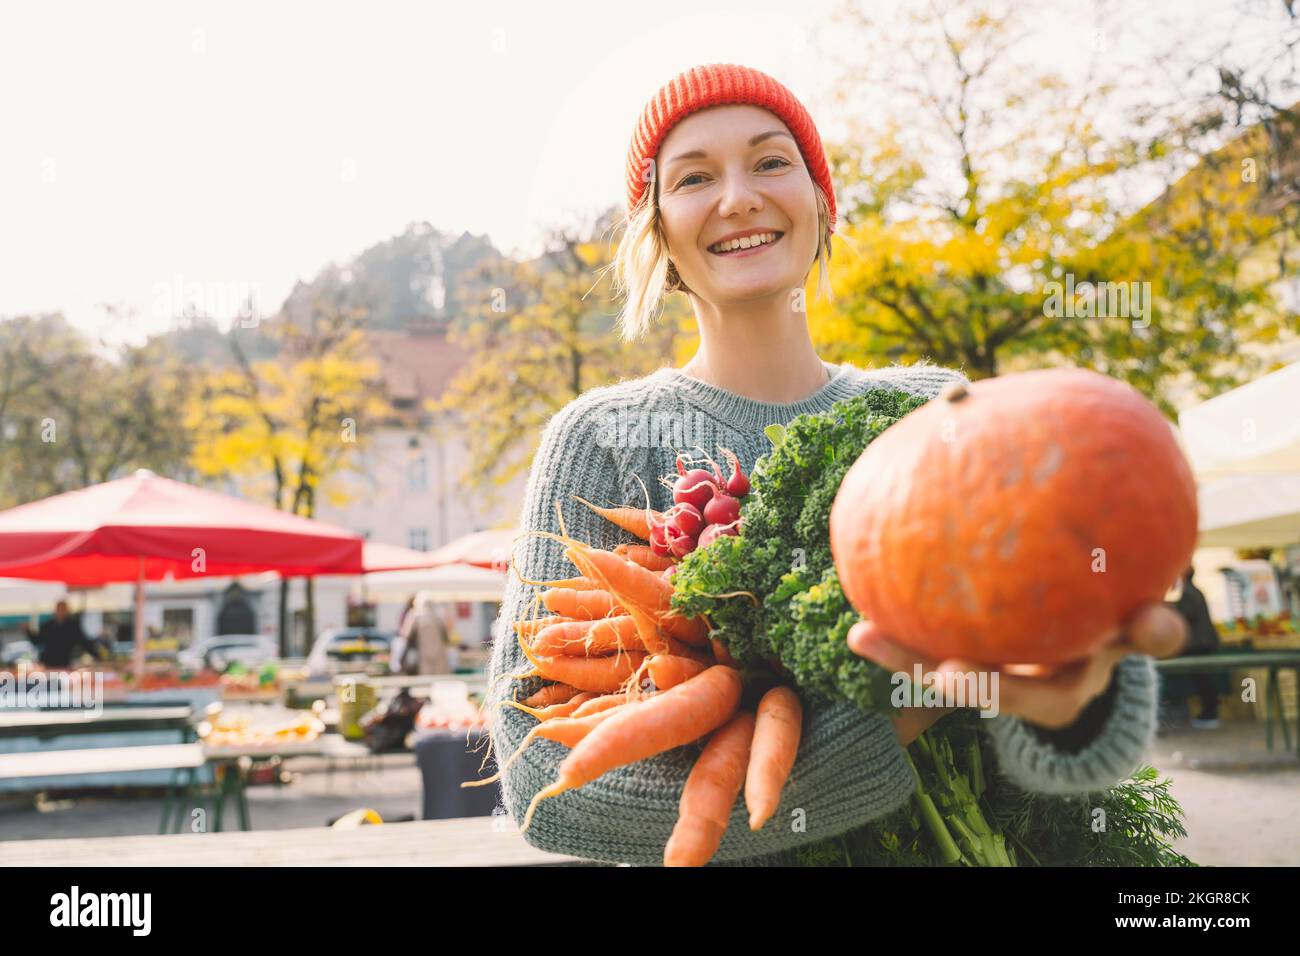 Mujer sonriente sosteniendo verduras frescas mostrando calabaza en el mercado Foto de stock